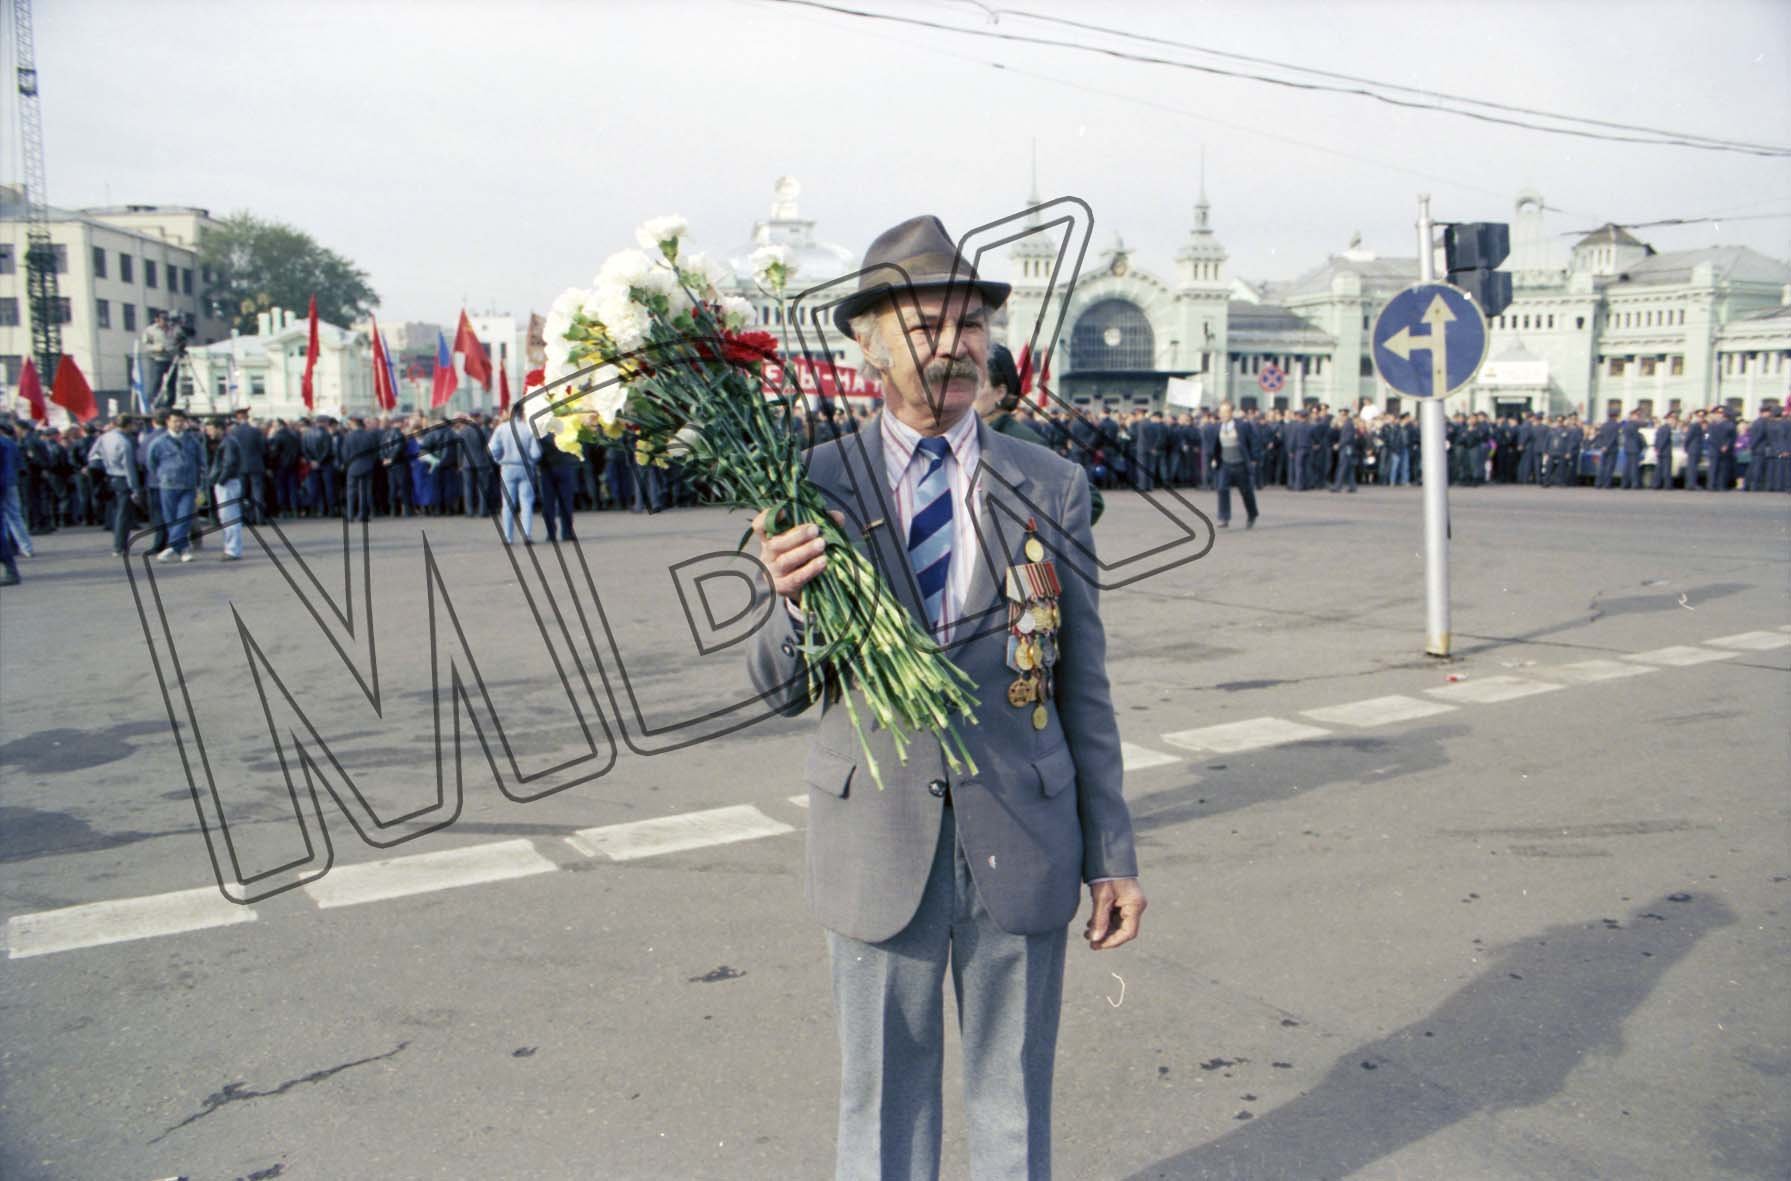 Fotografie: Begrüßung der Berlin-Brigade durch den russischen Ministerpräsidenten, Moskau, 3. September 1994 (Museum Berlin-Karlshorst RR-P)